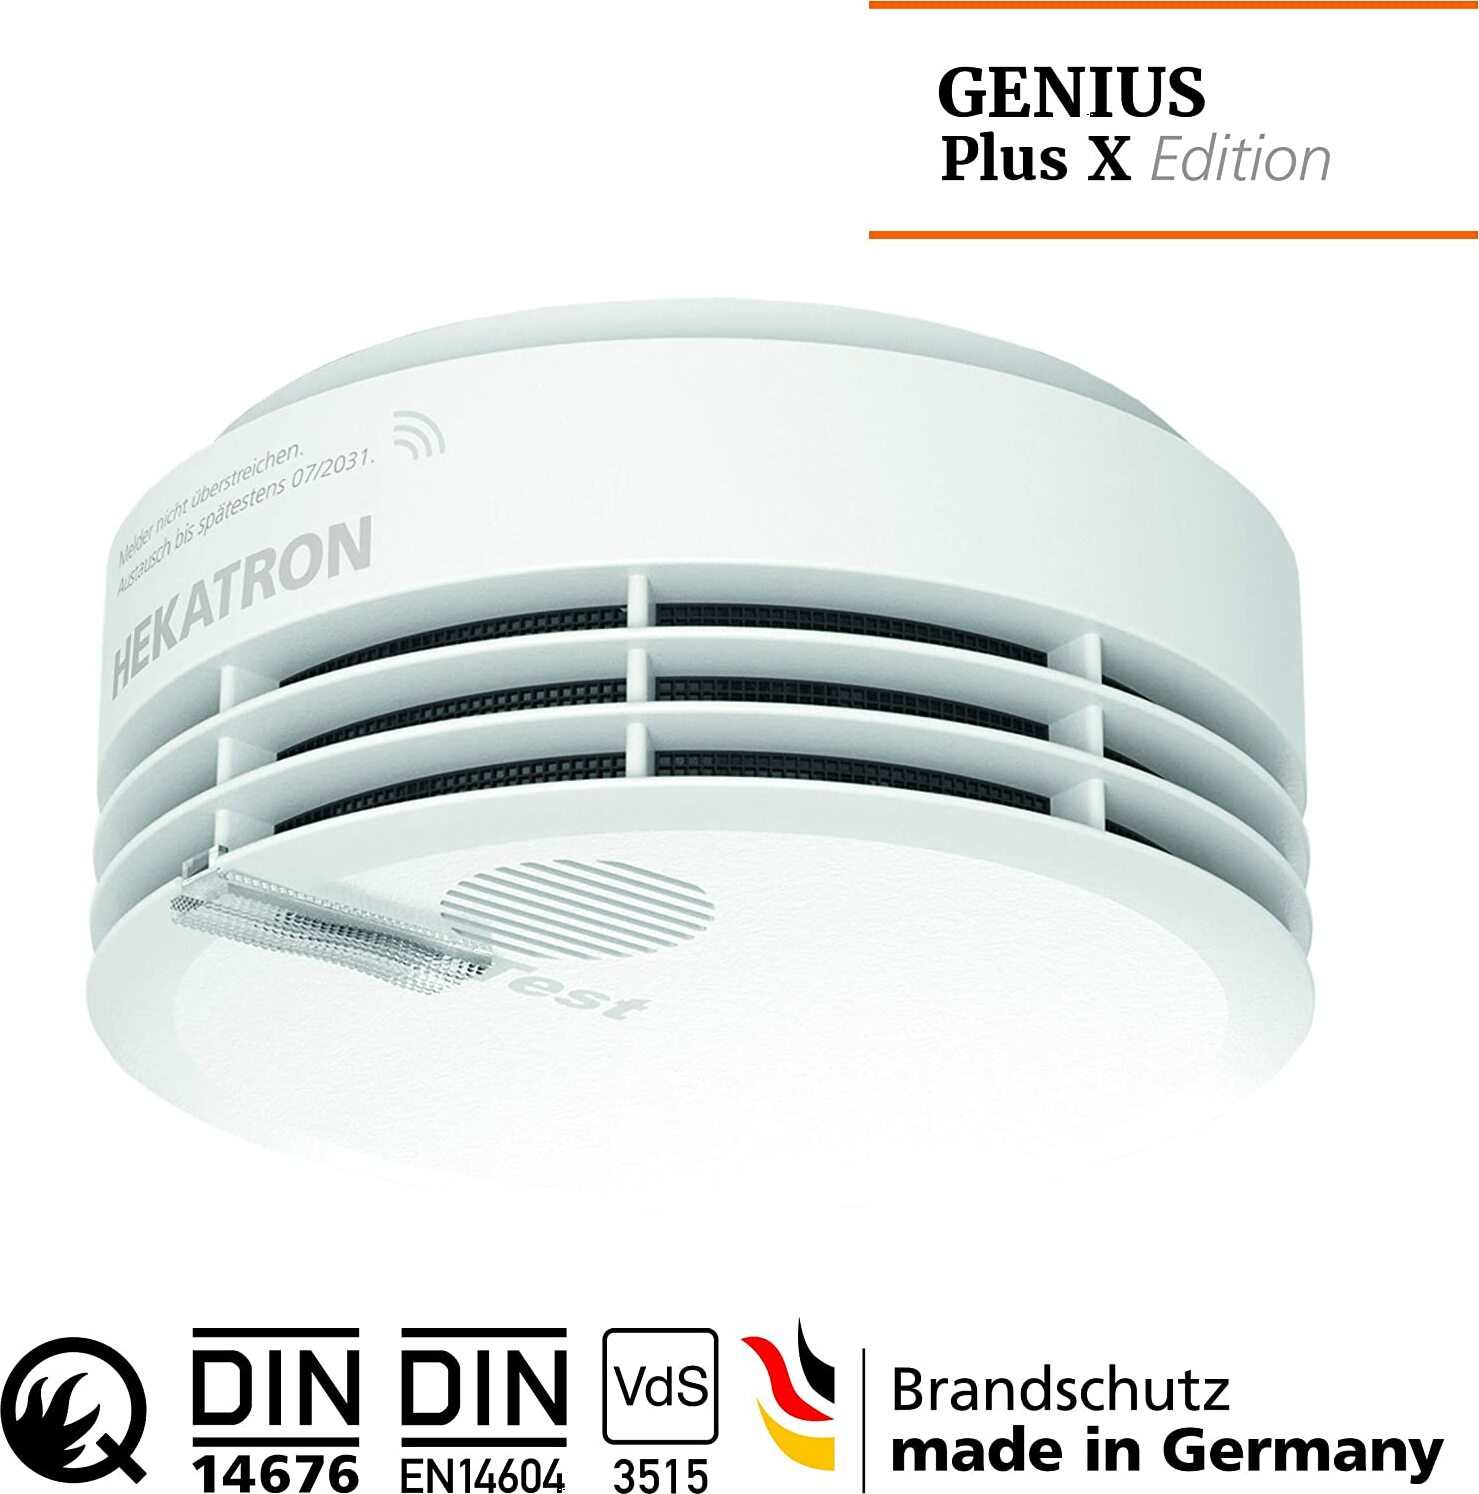 Hekatron Genius Plus X Rauchwarnmelder (31-5000049-02-01/31-5000030-02-01)  online kaufen